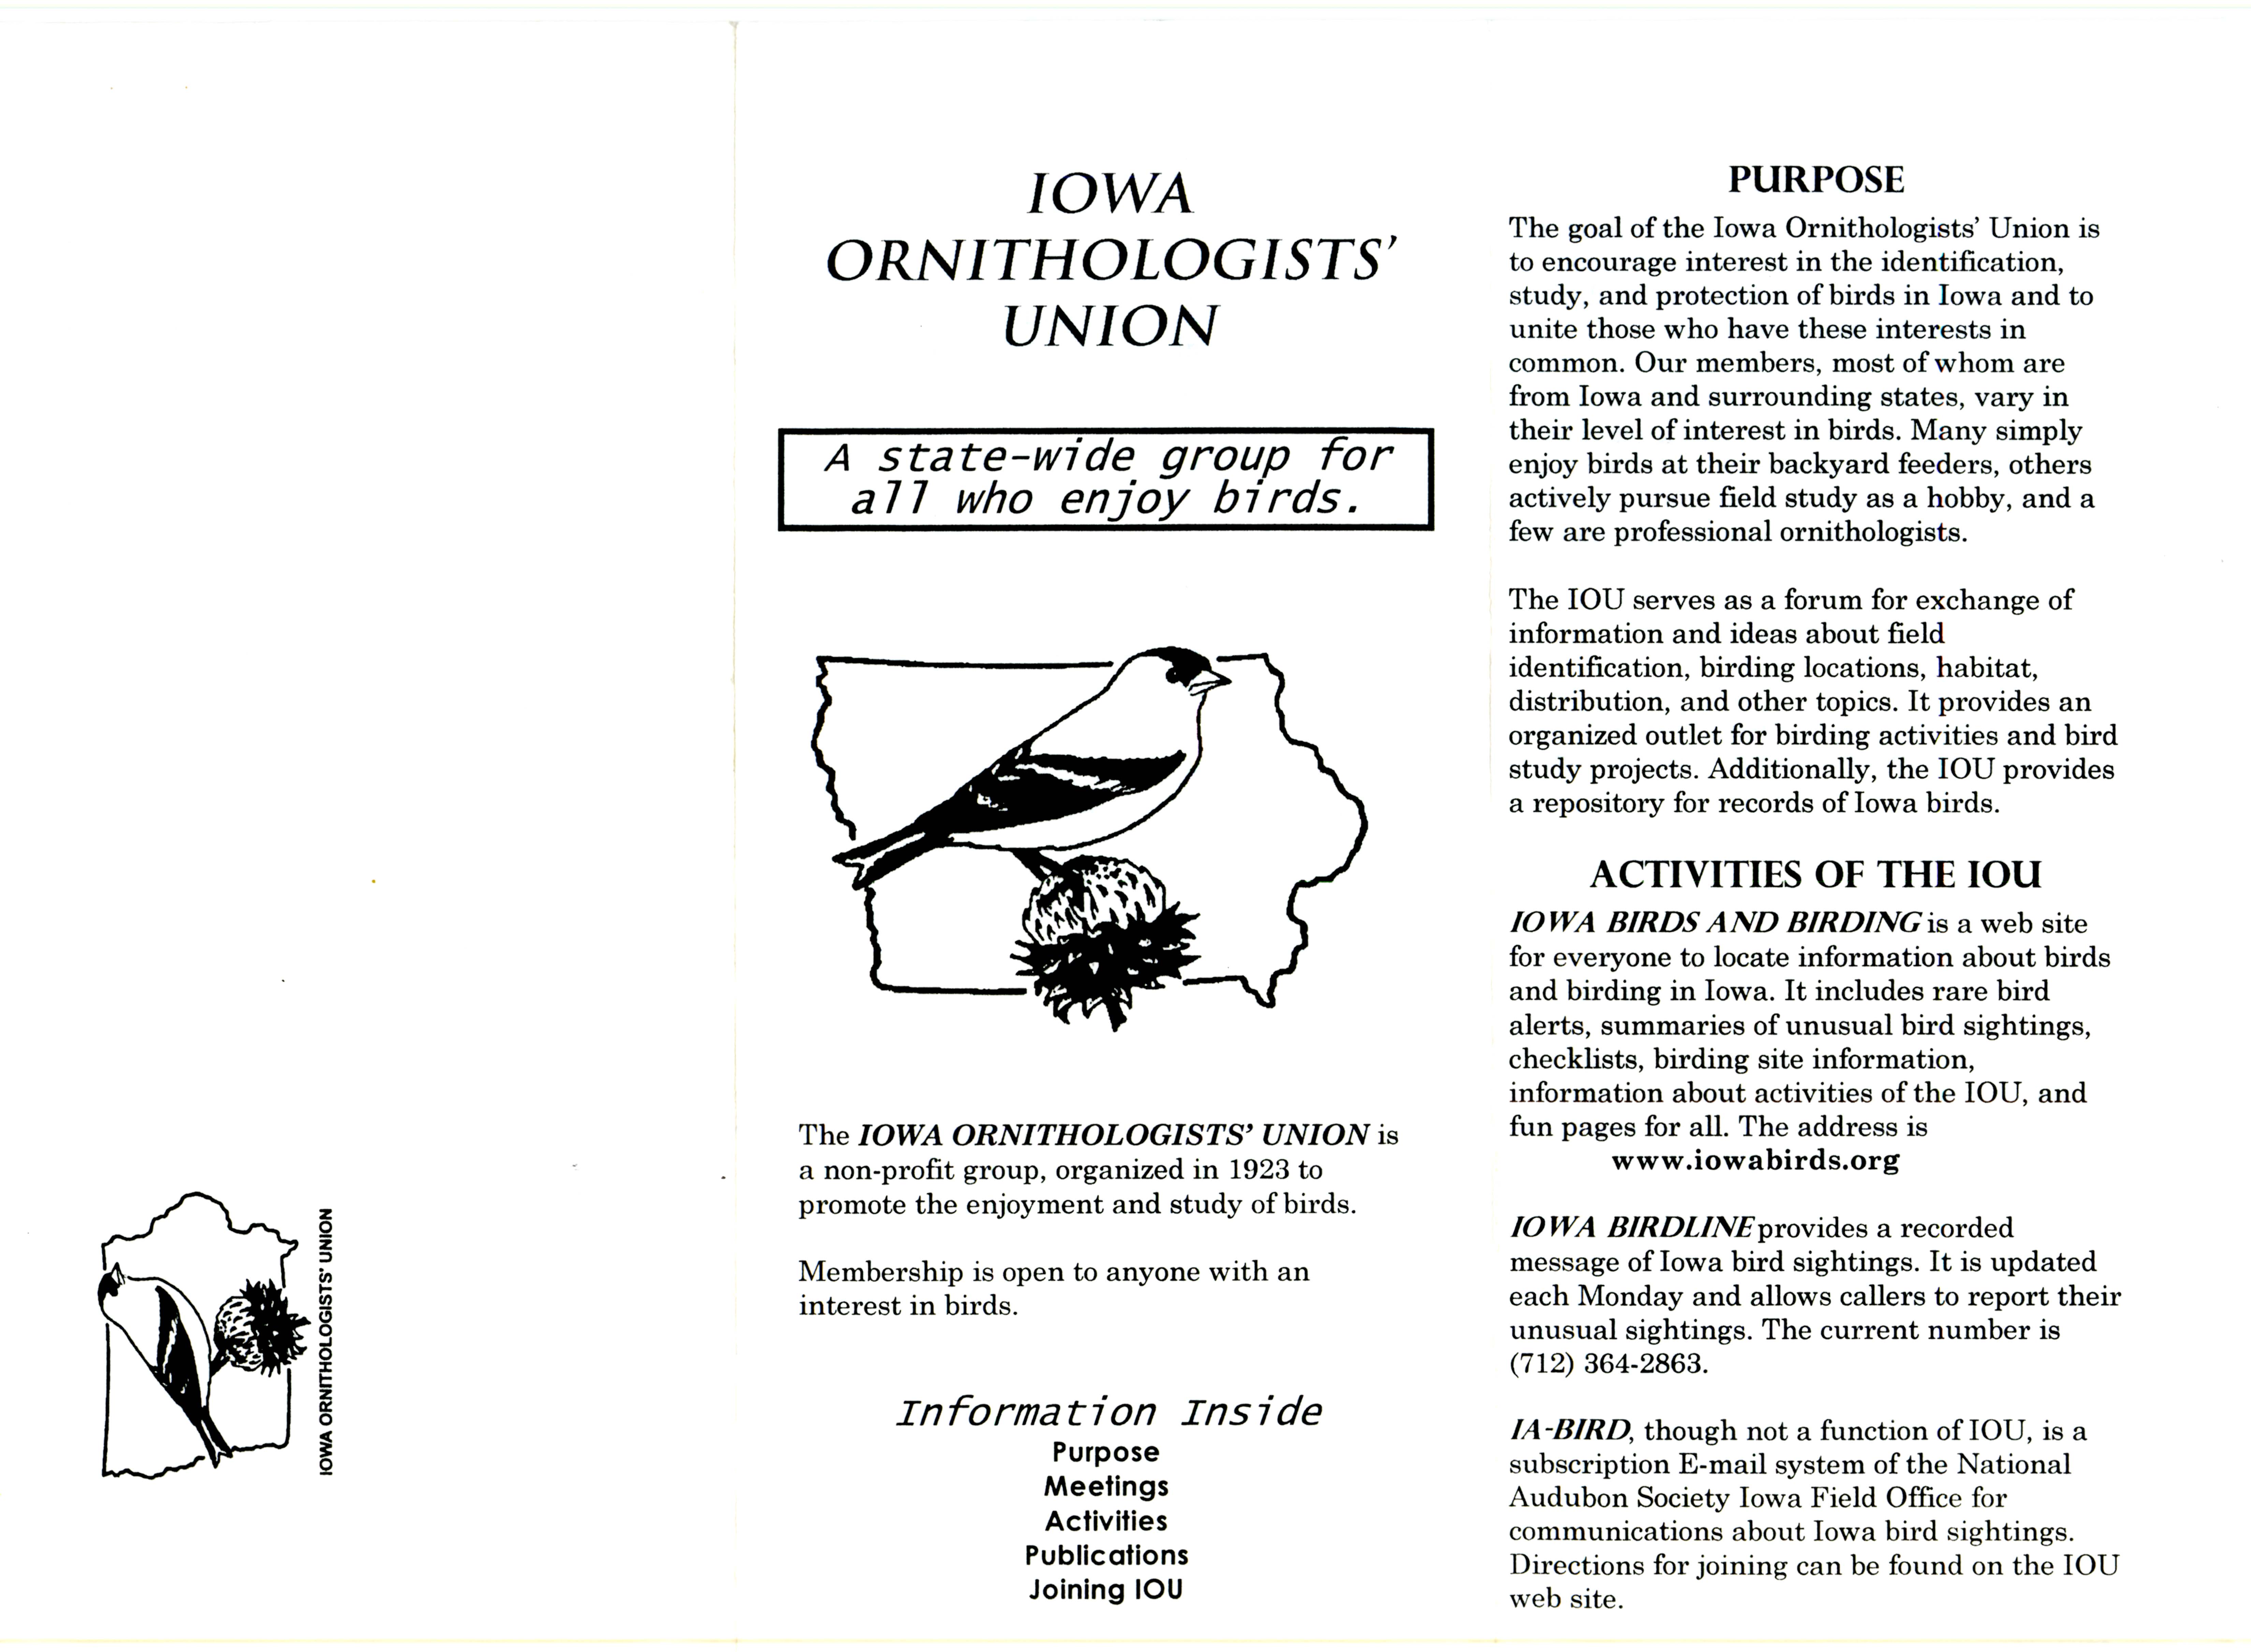 Iowa Ornithologists' Union pamphlet